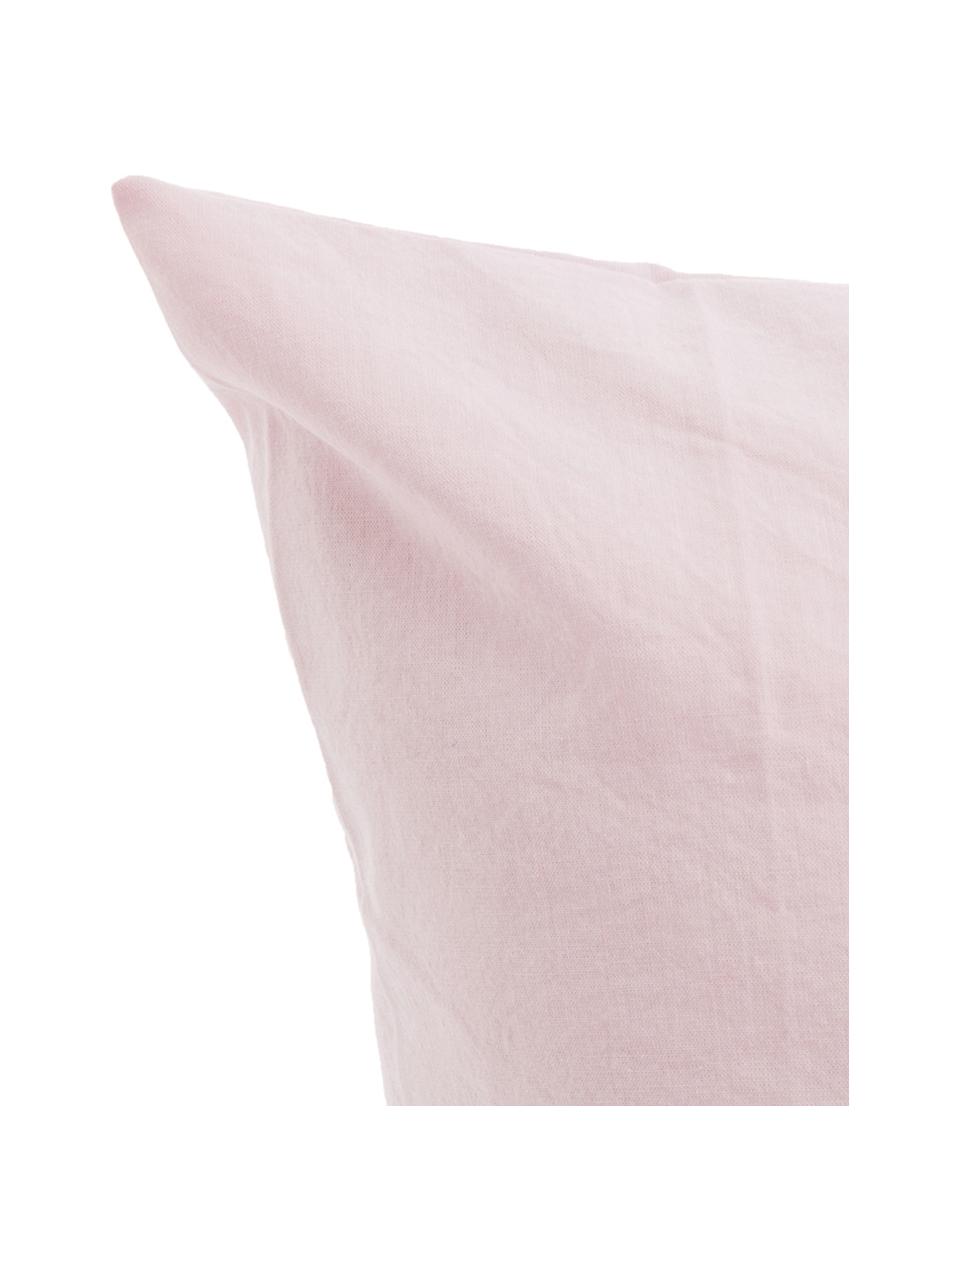 Parure copripiumino in cotone effetto stone washed Velle, Tessuto: cotone ranforce, Fronte e retro: rosa chiaro, 155 x 200 cm + 1 federa 50 x 80 cm